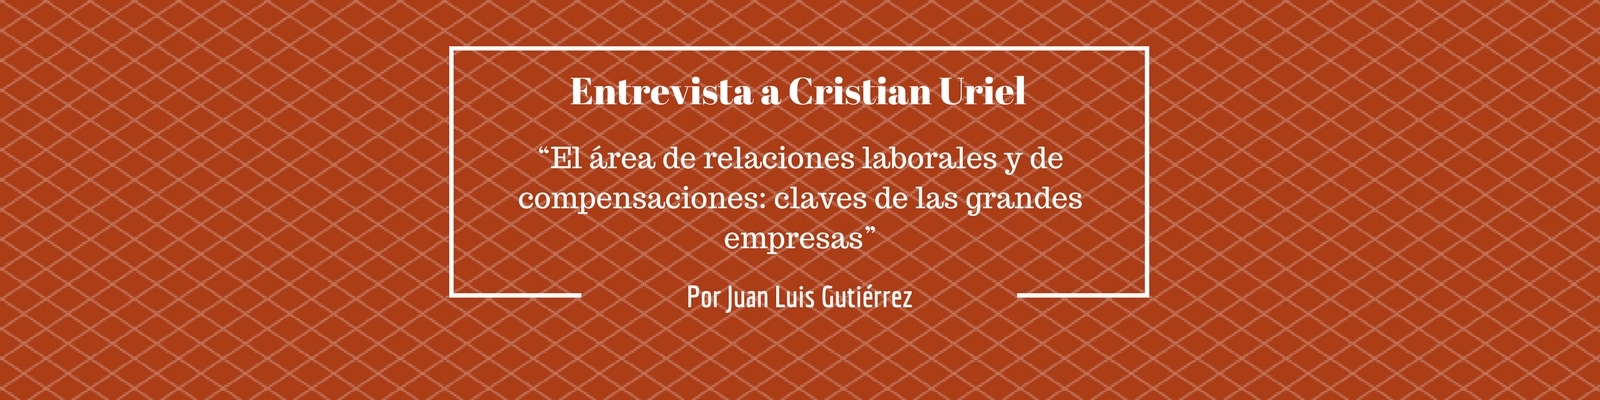 Entrevista a Cristian Uriel: “El área de relaciones laborales y de compensaciones: claves de las grandes empresas”